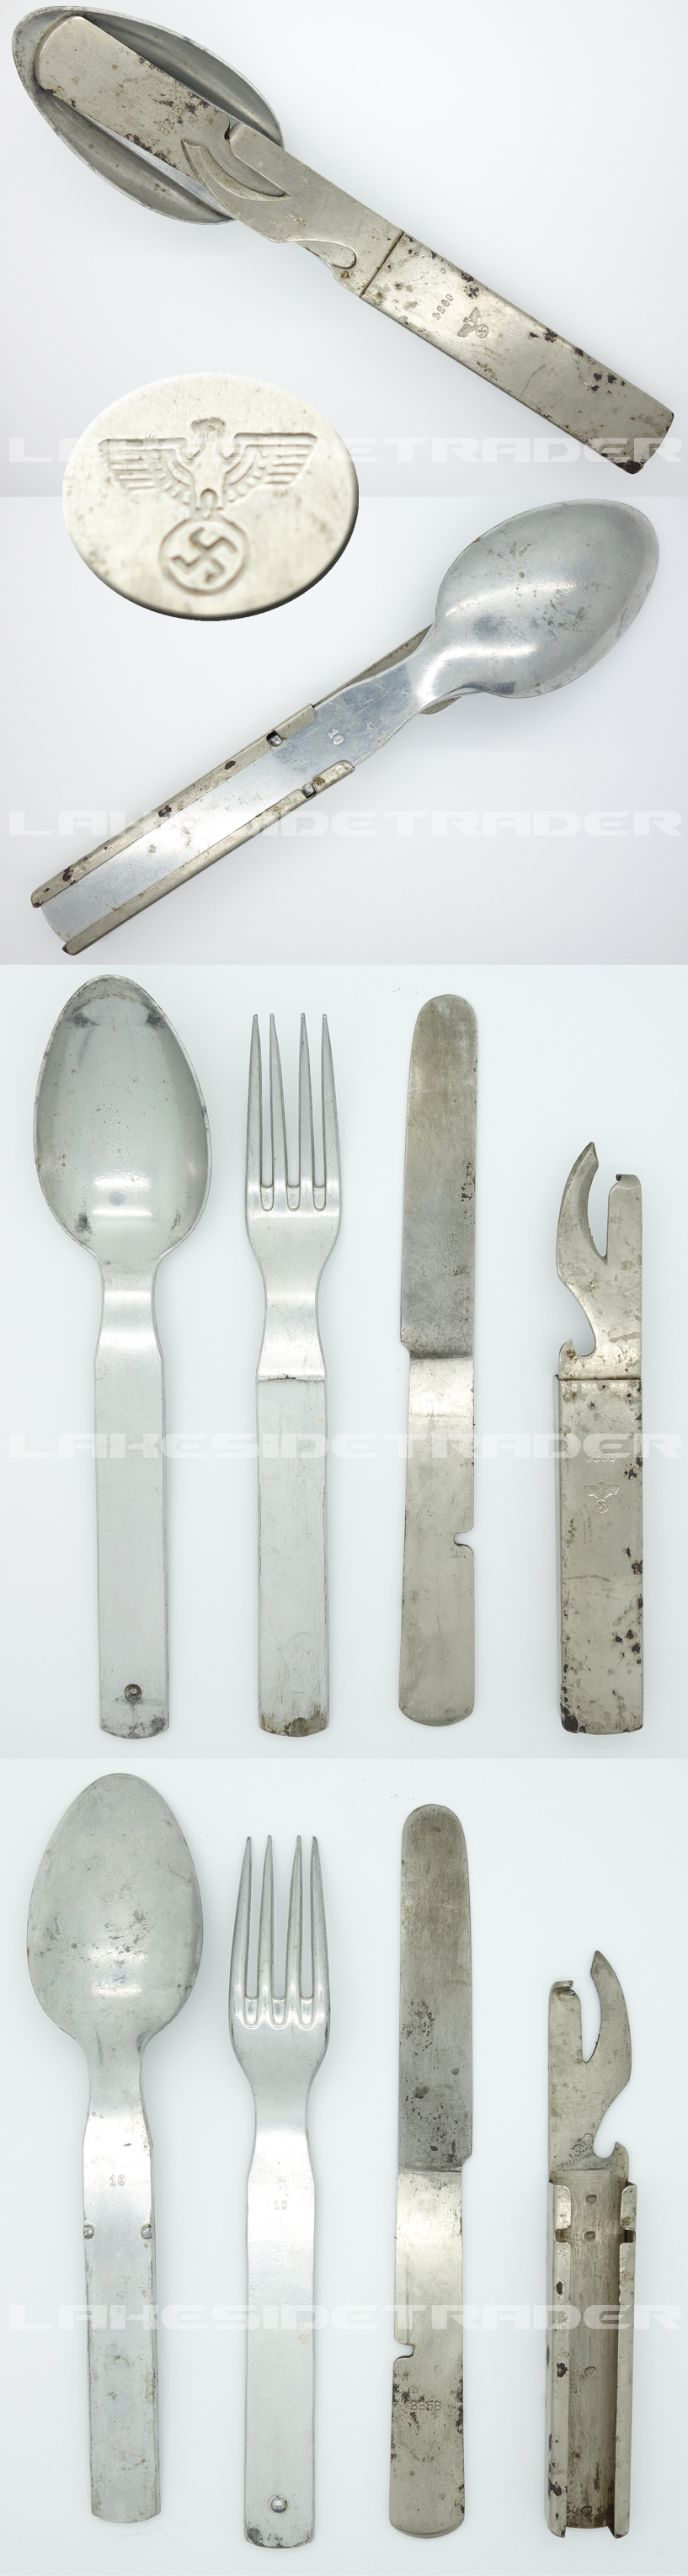 Field Issue Wehrmacht Cutlery Set